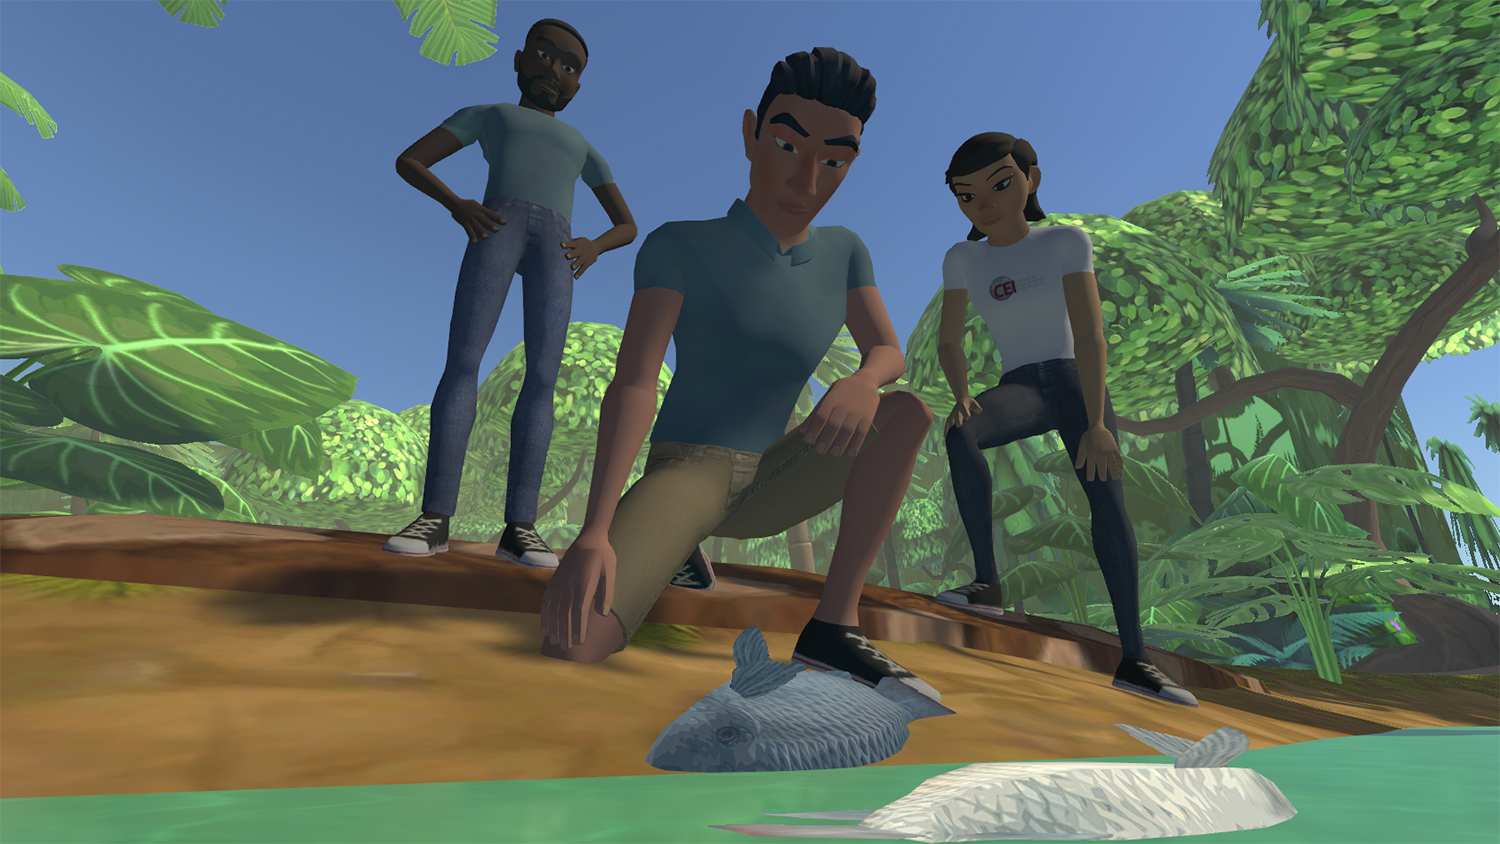 三个年轻人检查水道的视频游戏画面